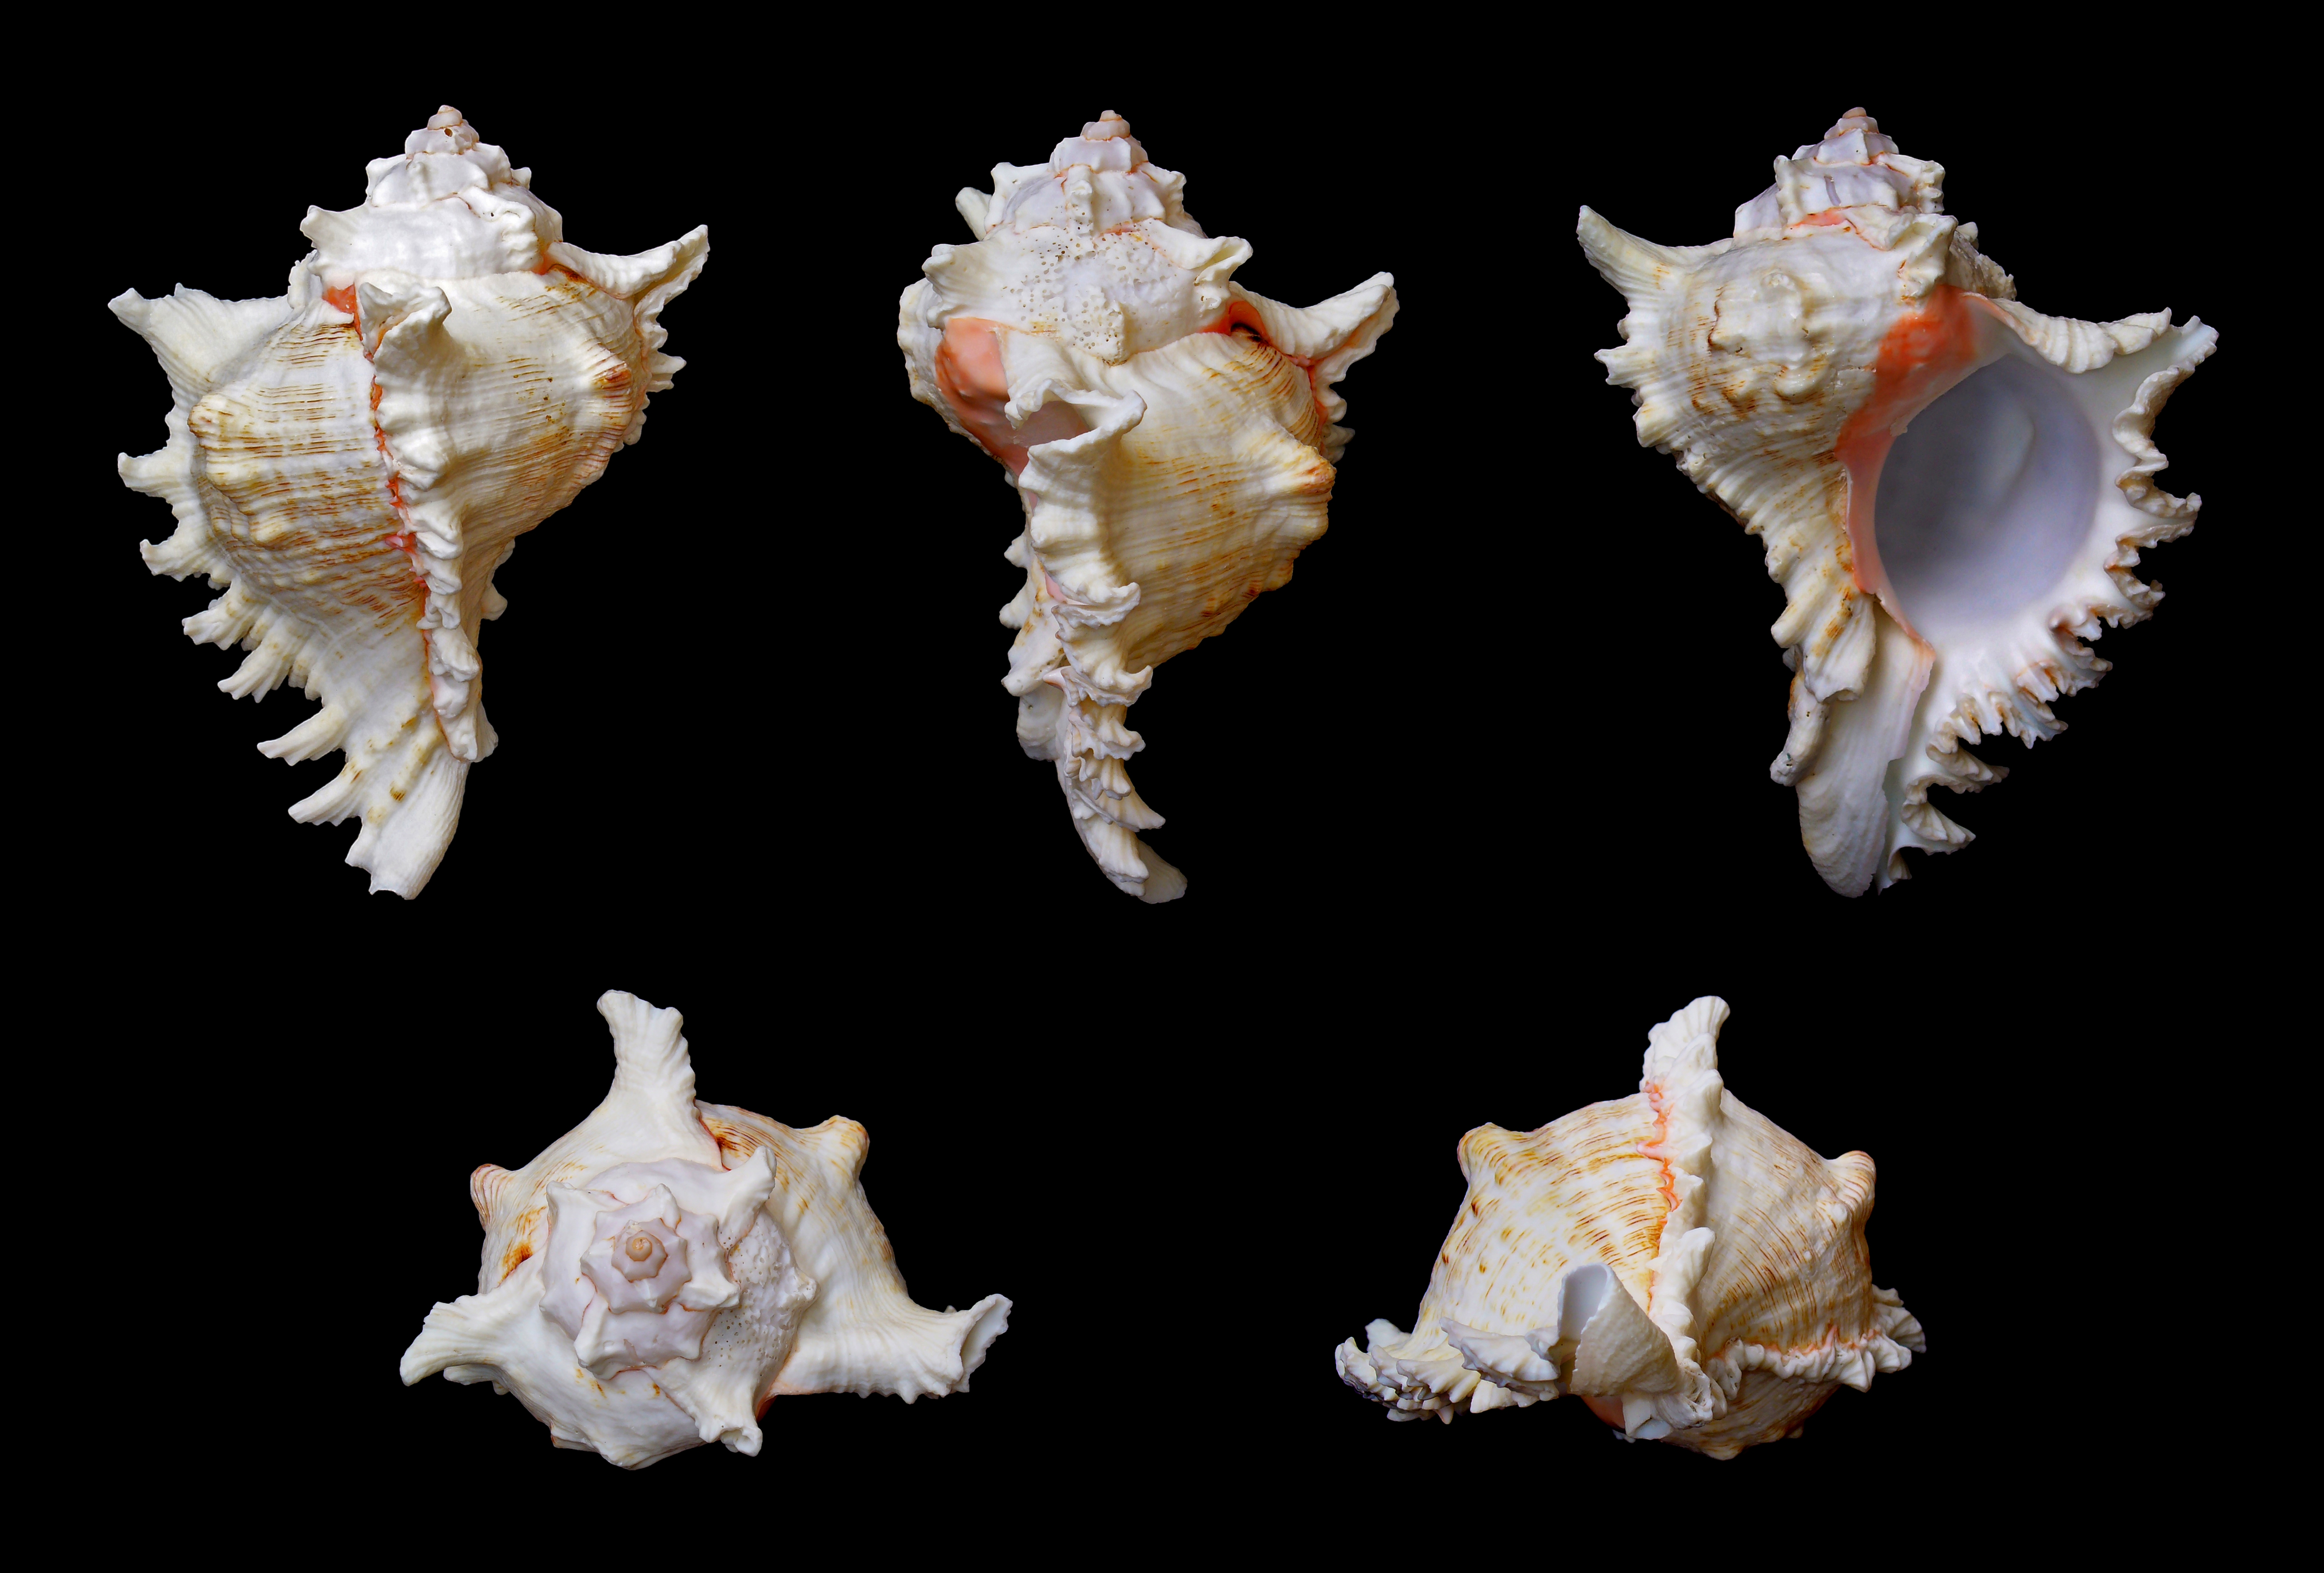 виды морских ракушек и их названия фото